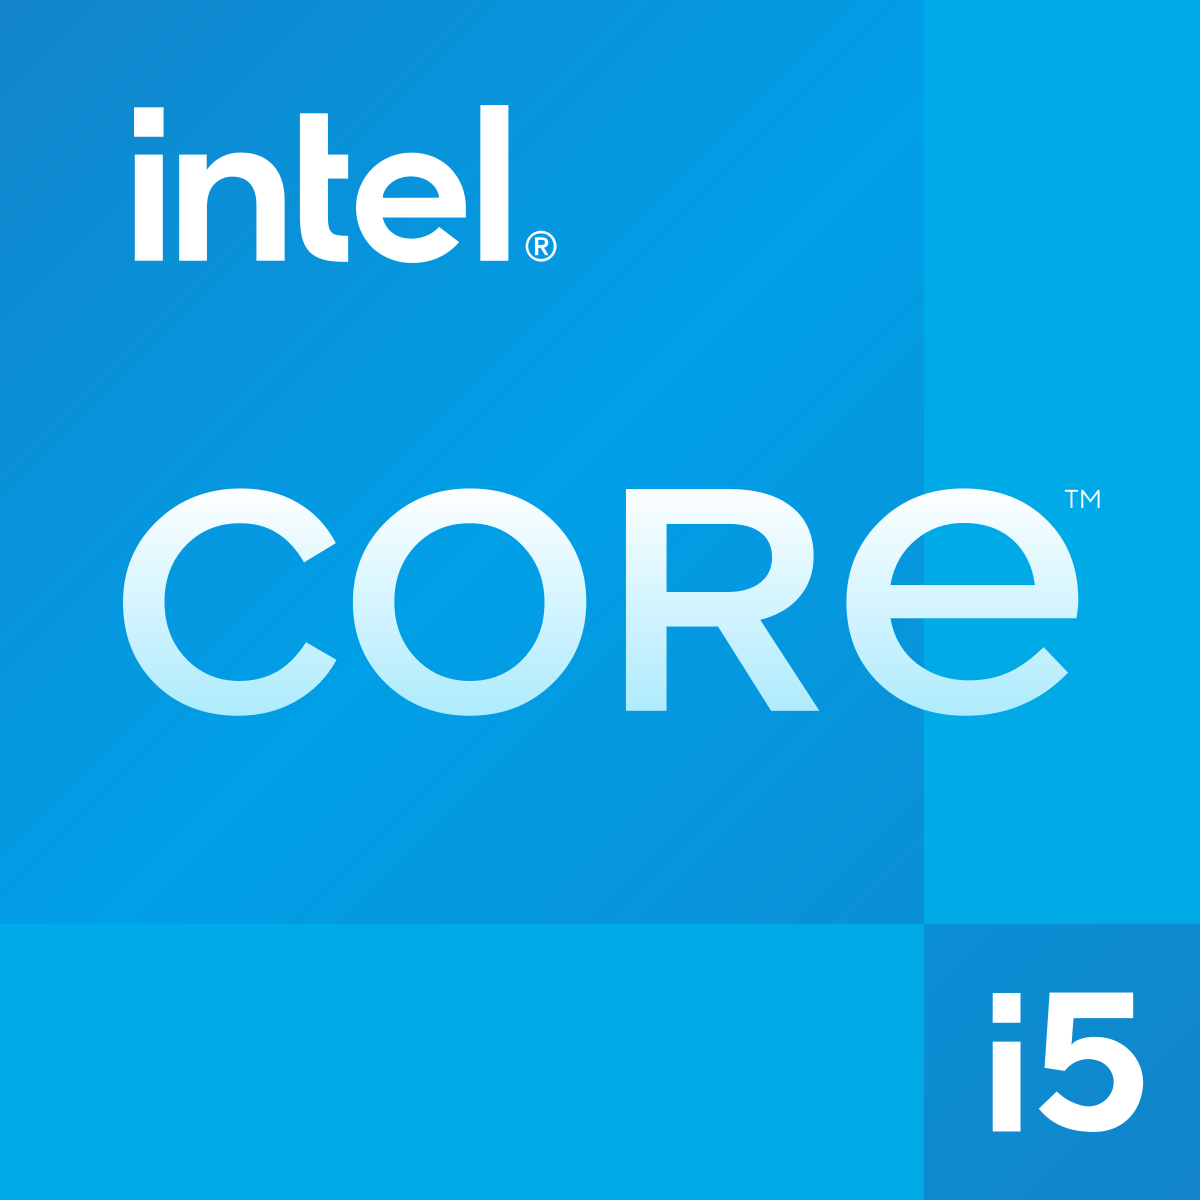 Intel Core i5 Wikipedia